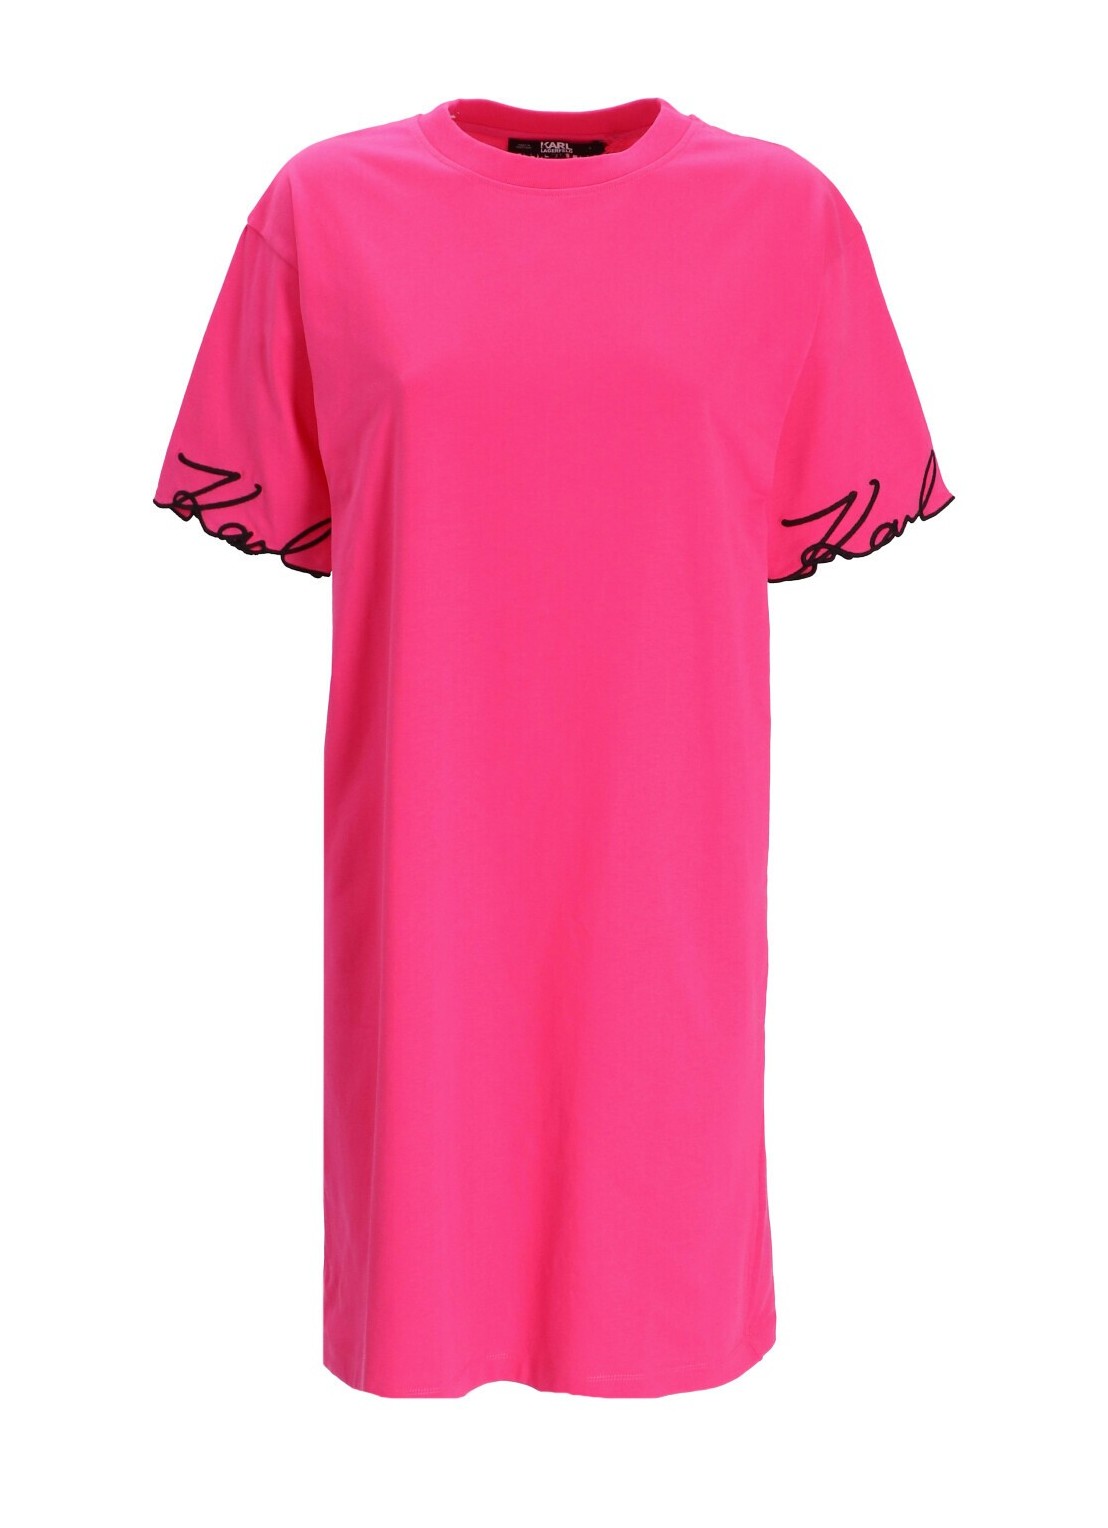 Vestido karl lagerfeld dress woman karl signature slv hem dress 235w1357 449 talla rosa
 